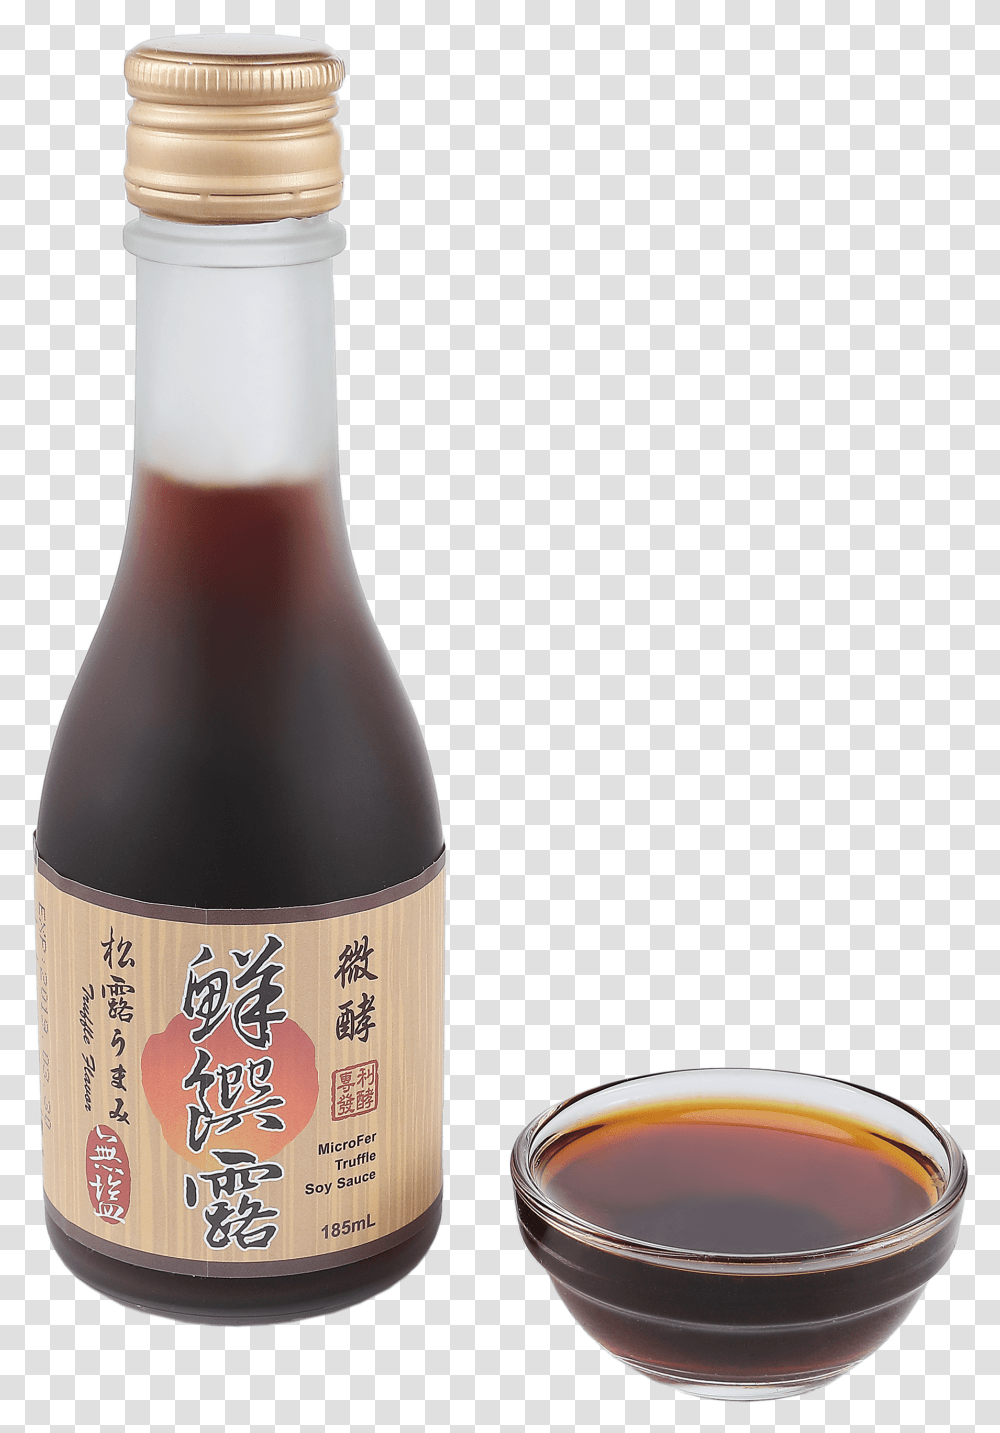 Microfer Soy Sauce Bottle, Beverage, Drink, Sake, Alcohol Transparent Png